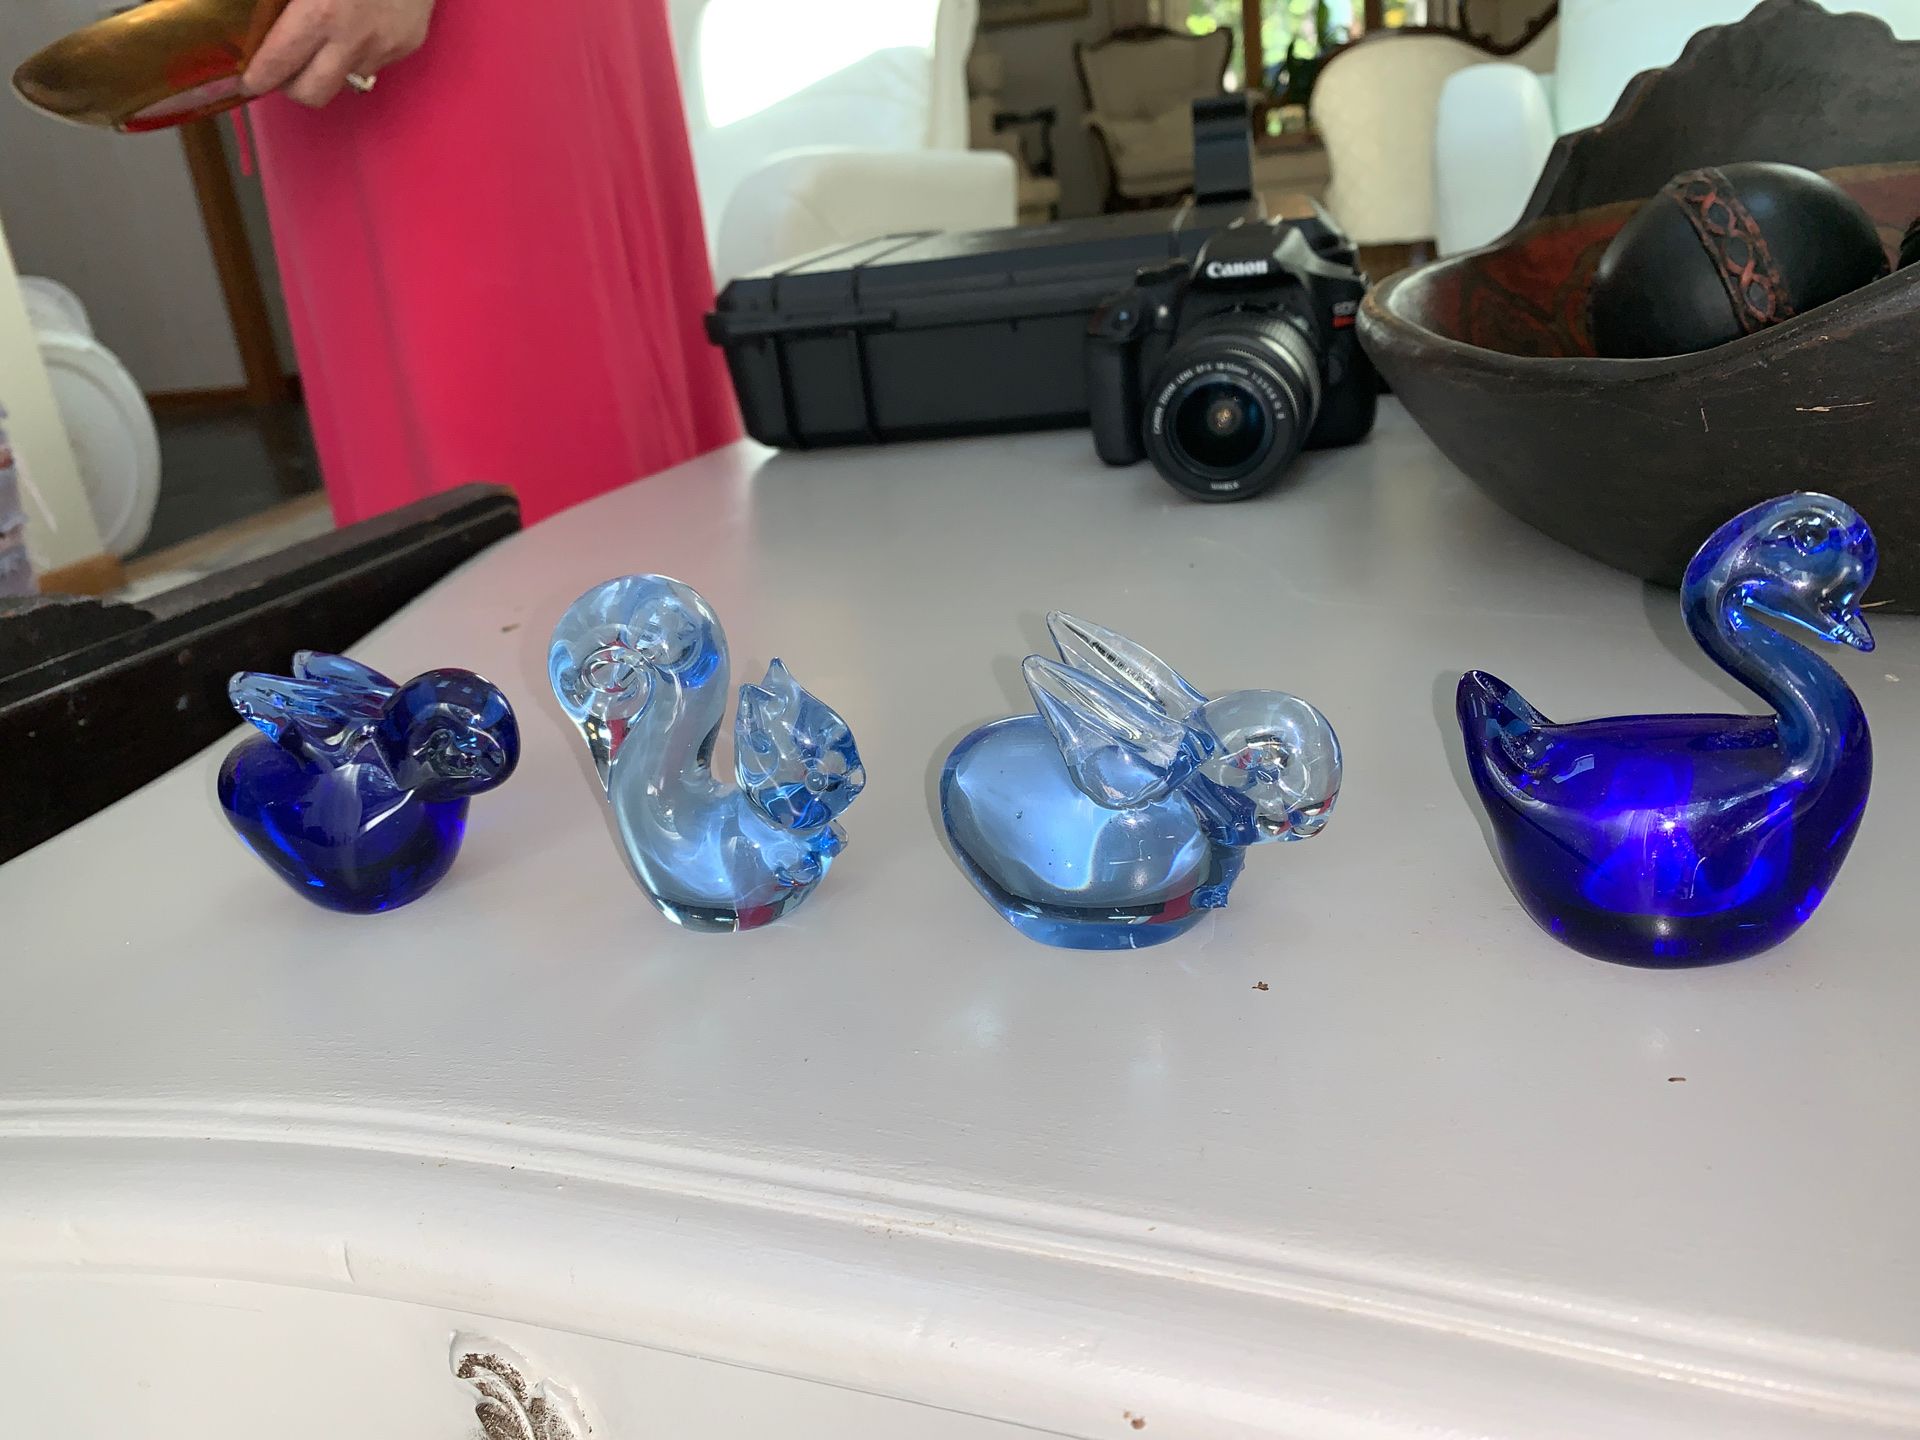 Blue Antique glass figures